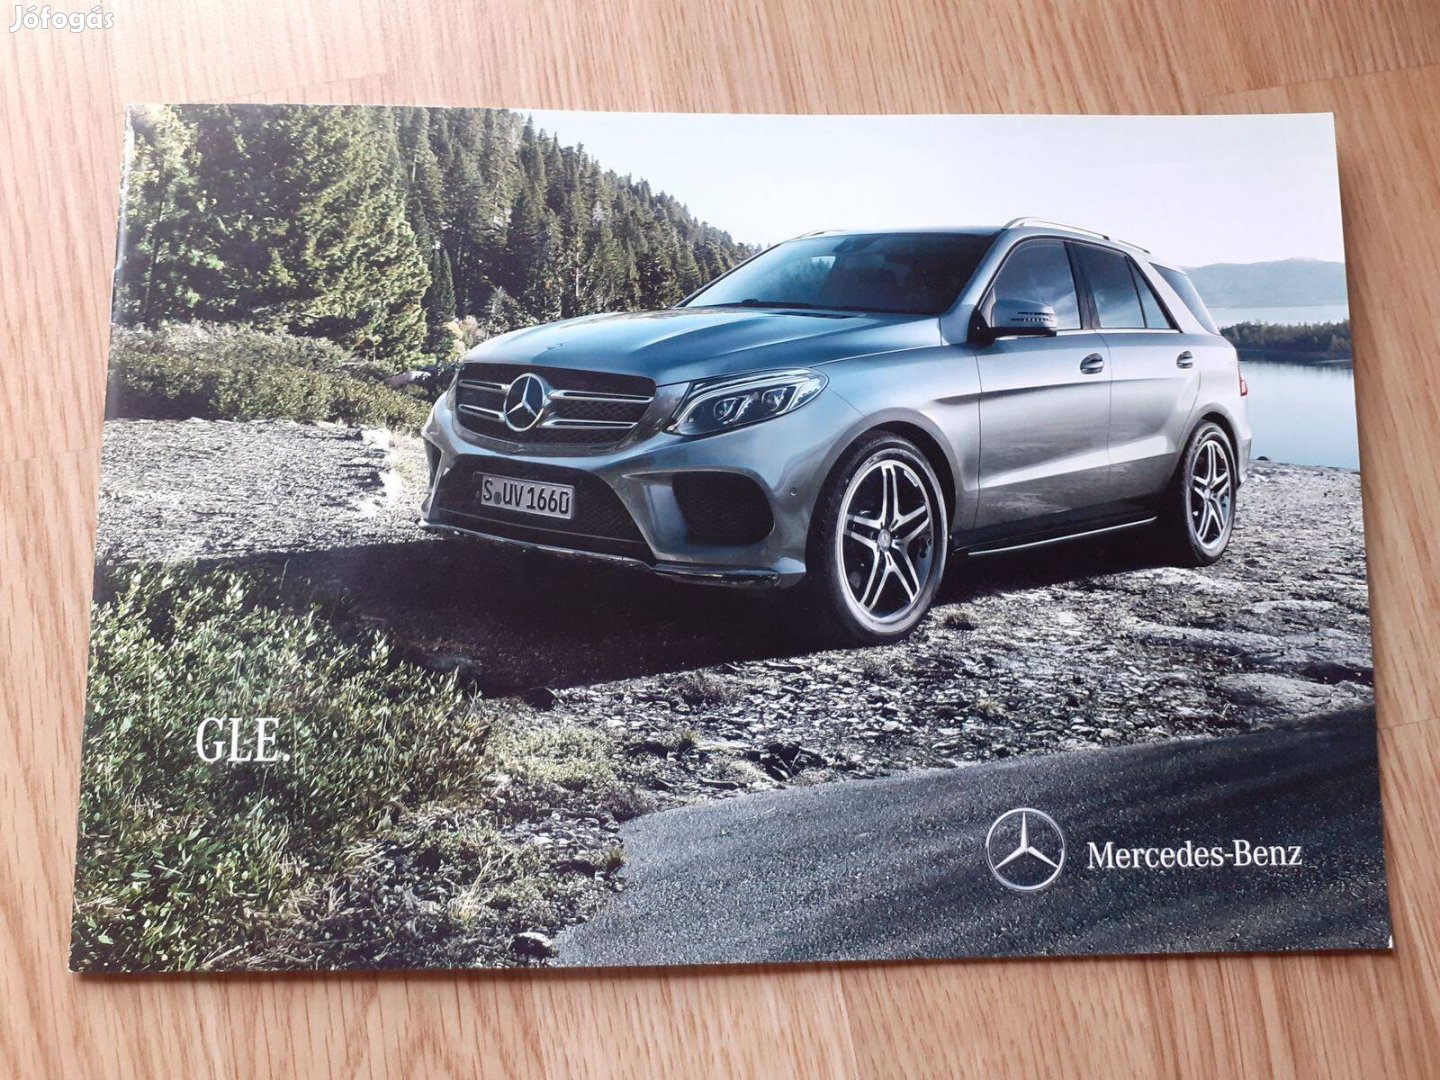 Mercedes Gle (W166) prospektus - 2014, magyar nyelvű